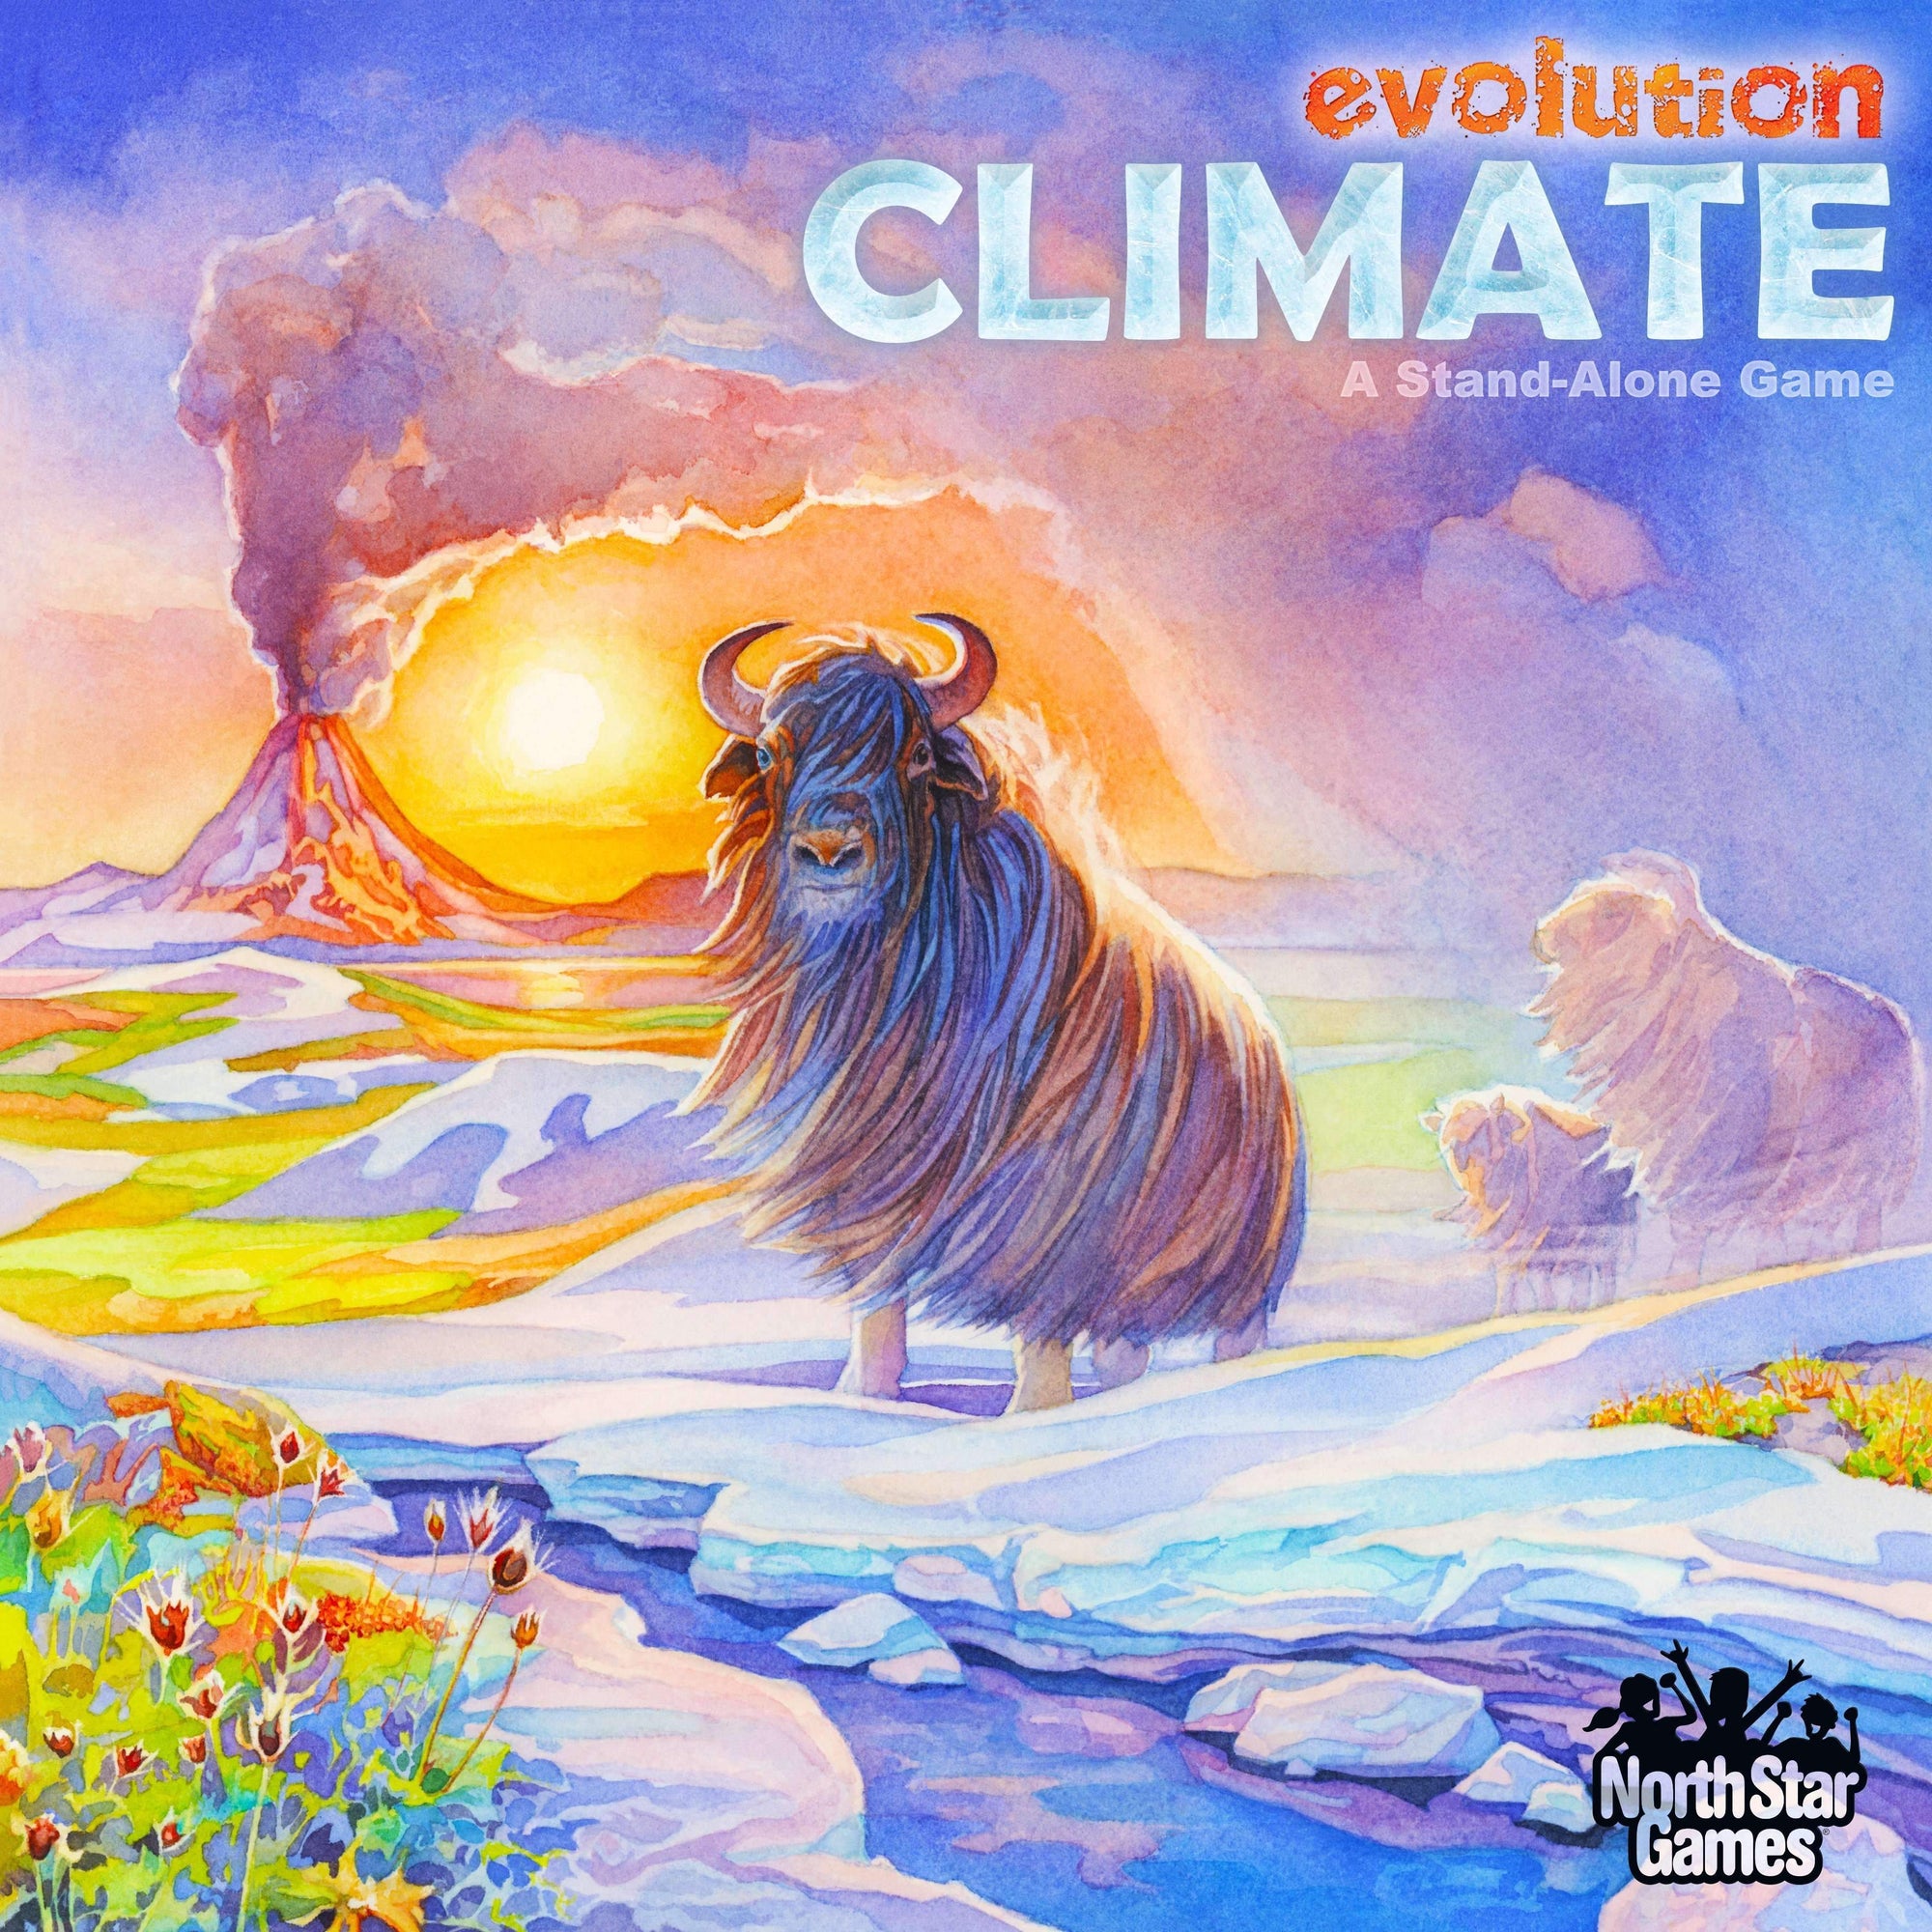 Ewolucja: Zestaw do konwersji klimatu plus pakiet promocyjny 3 (wydanie detaliczne)